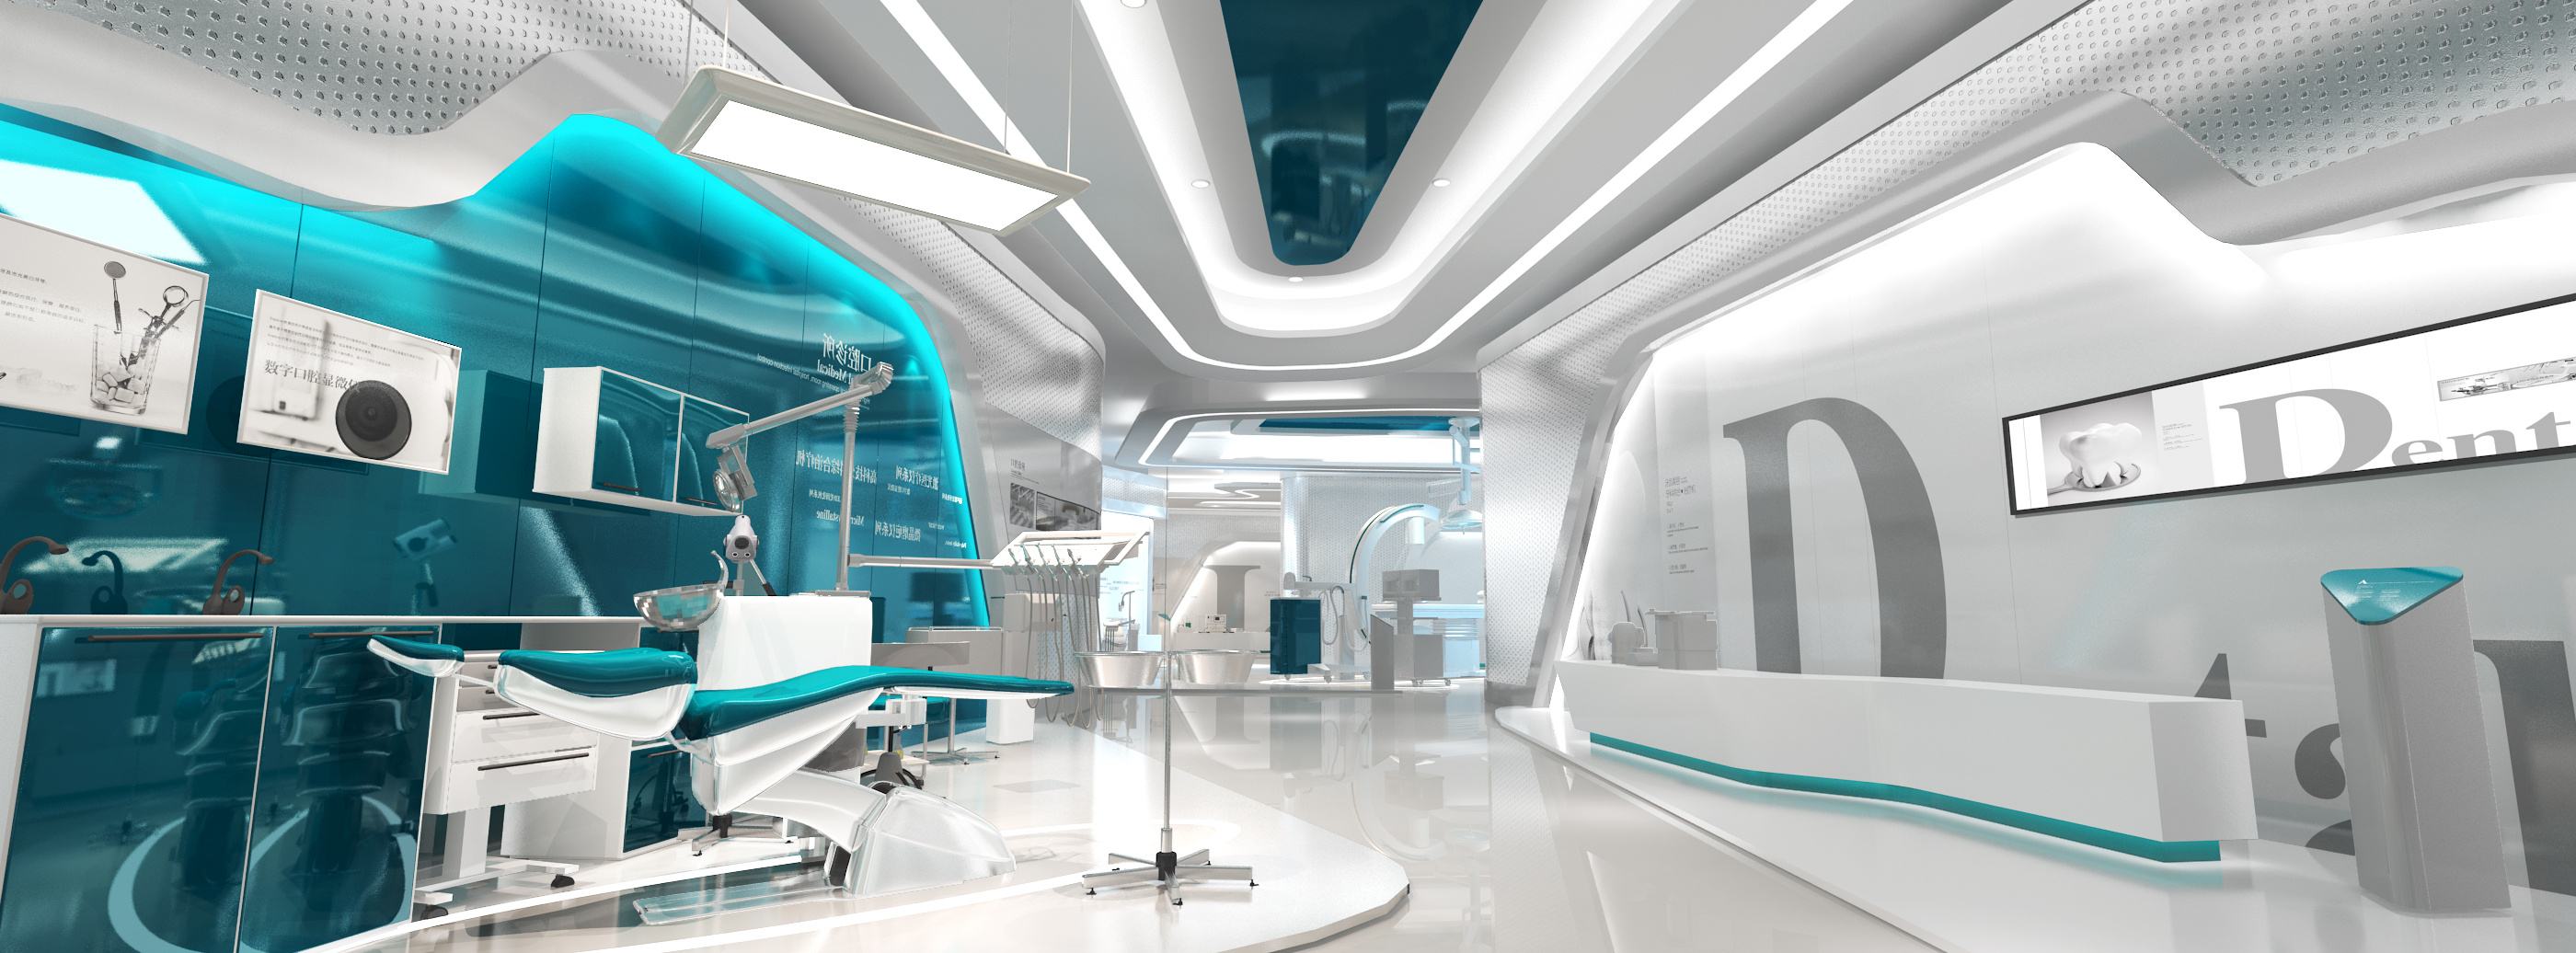 智慧医疗展厅设计要点：聚焦可视、交互新体验 